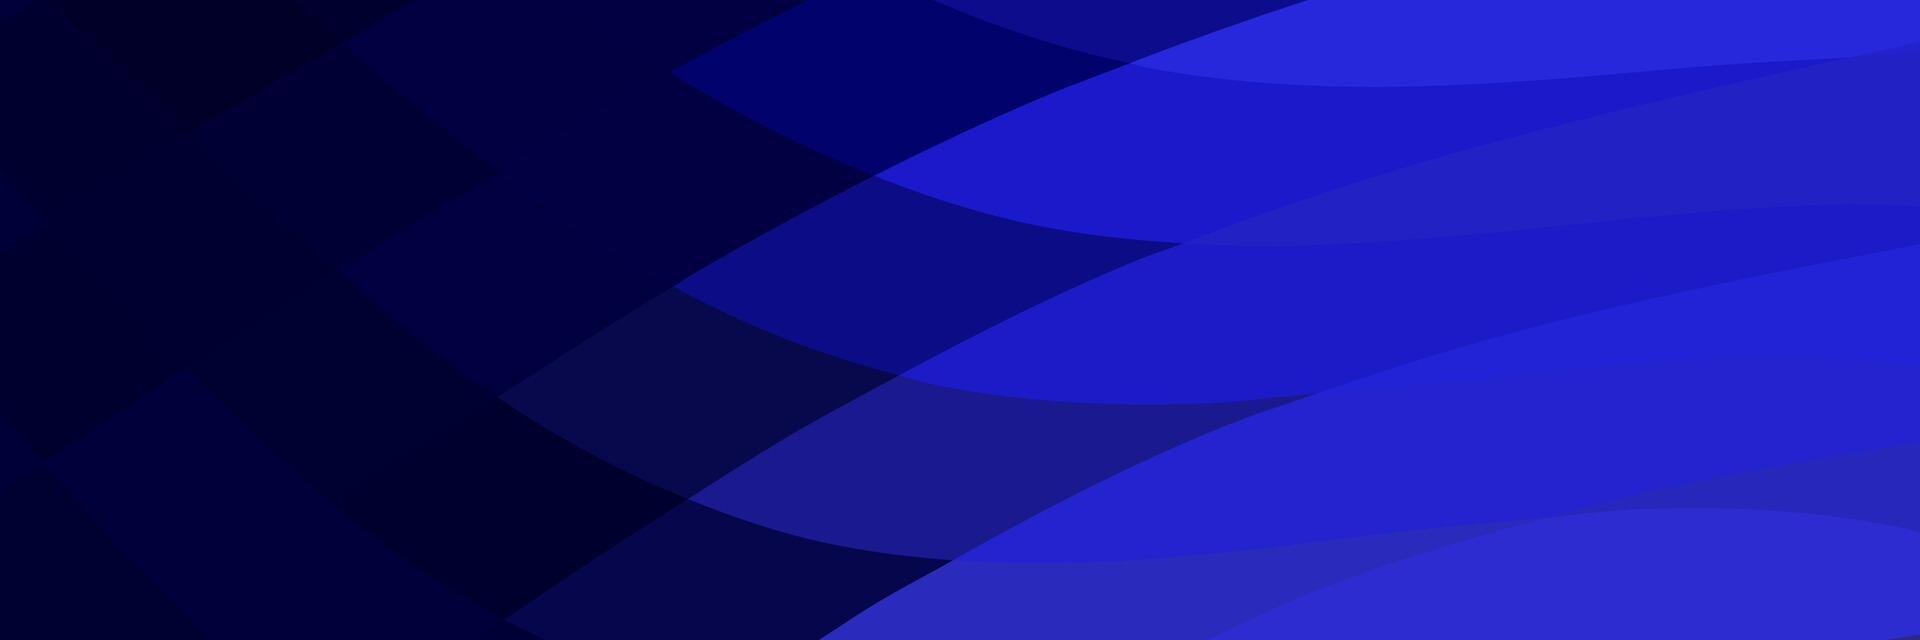 abstrakt elegant dunkel Blau geometrisch Hintergrund zum Geschäft vektor